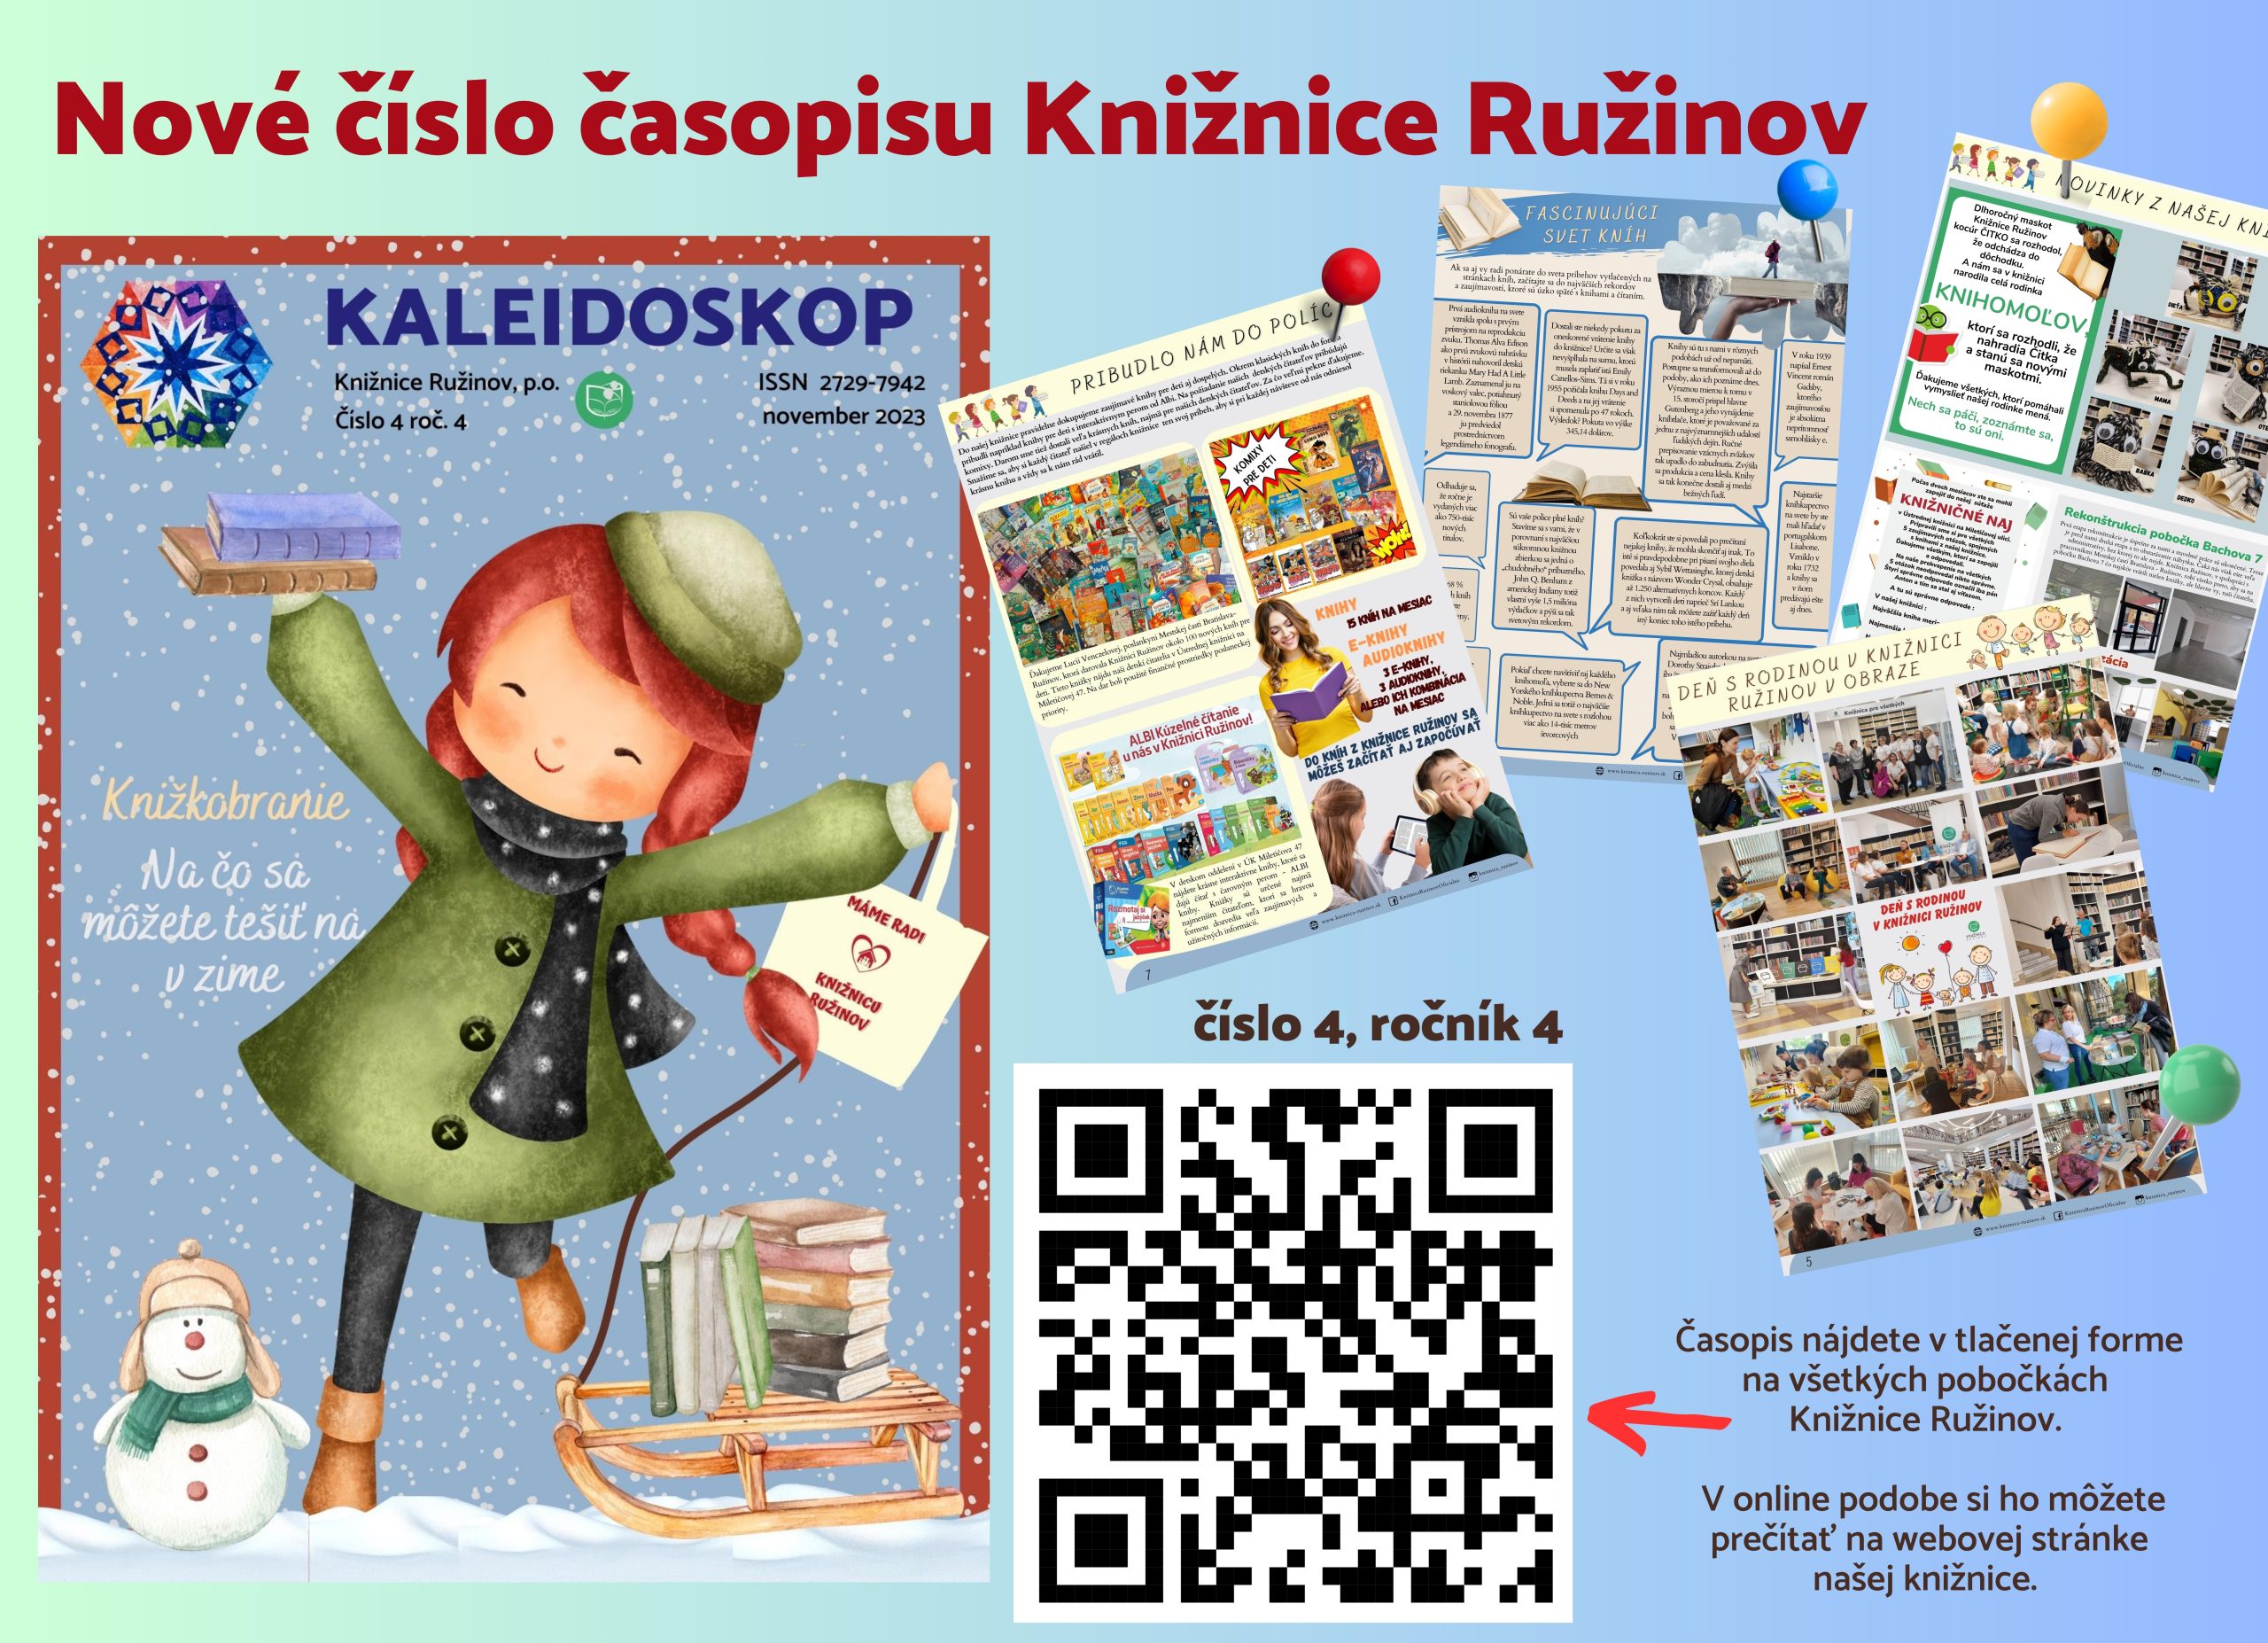 Nové číslo časopisu Kaleidoskop 2, informácia – A4